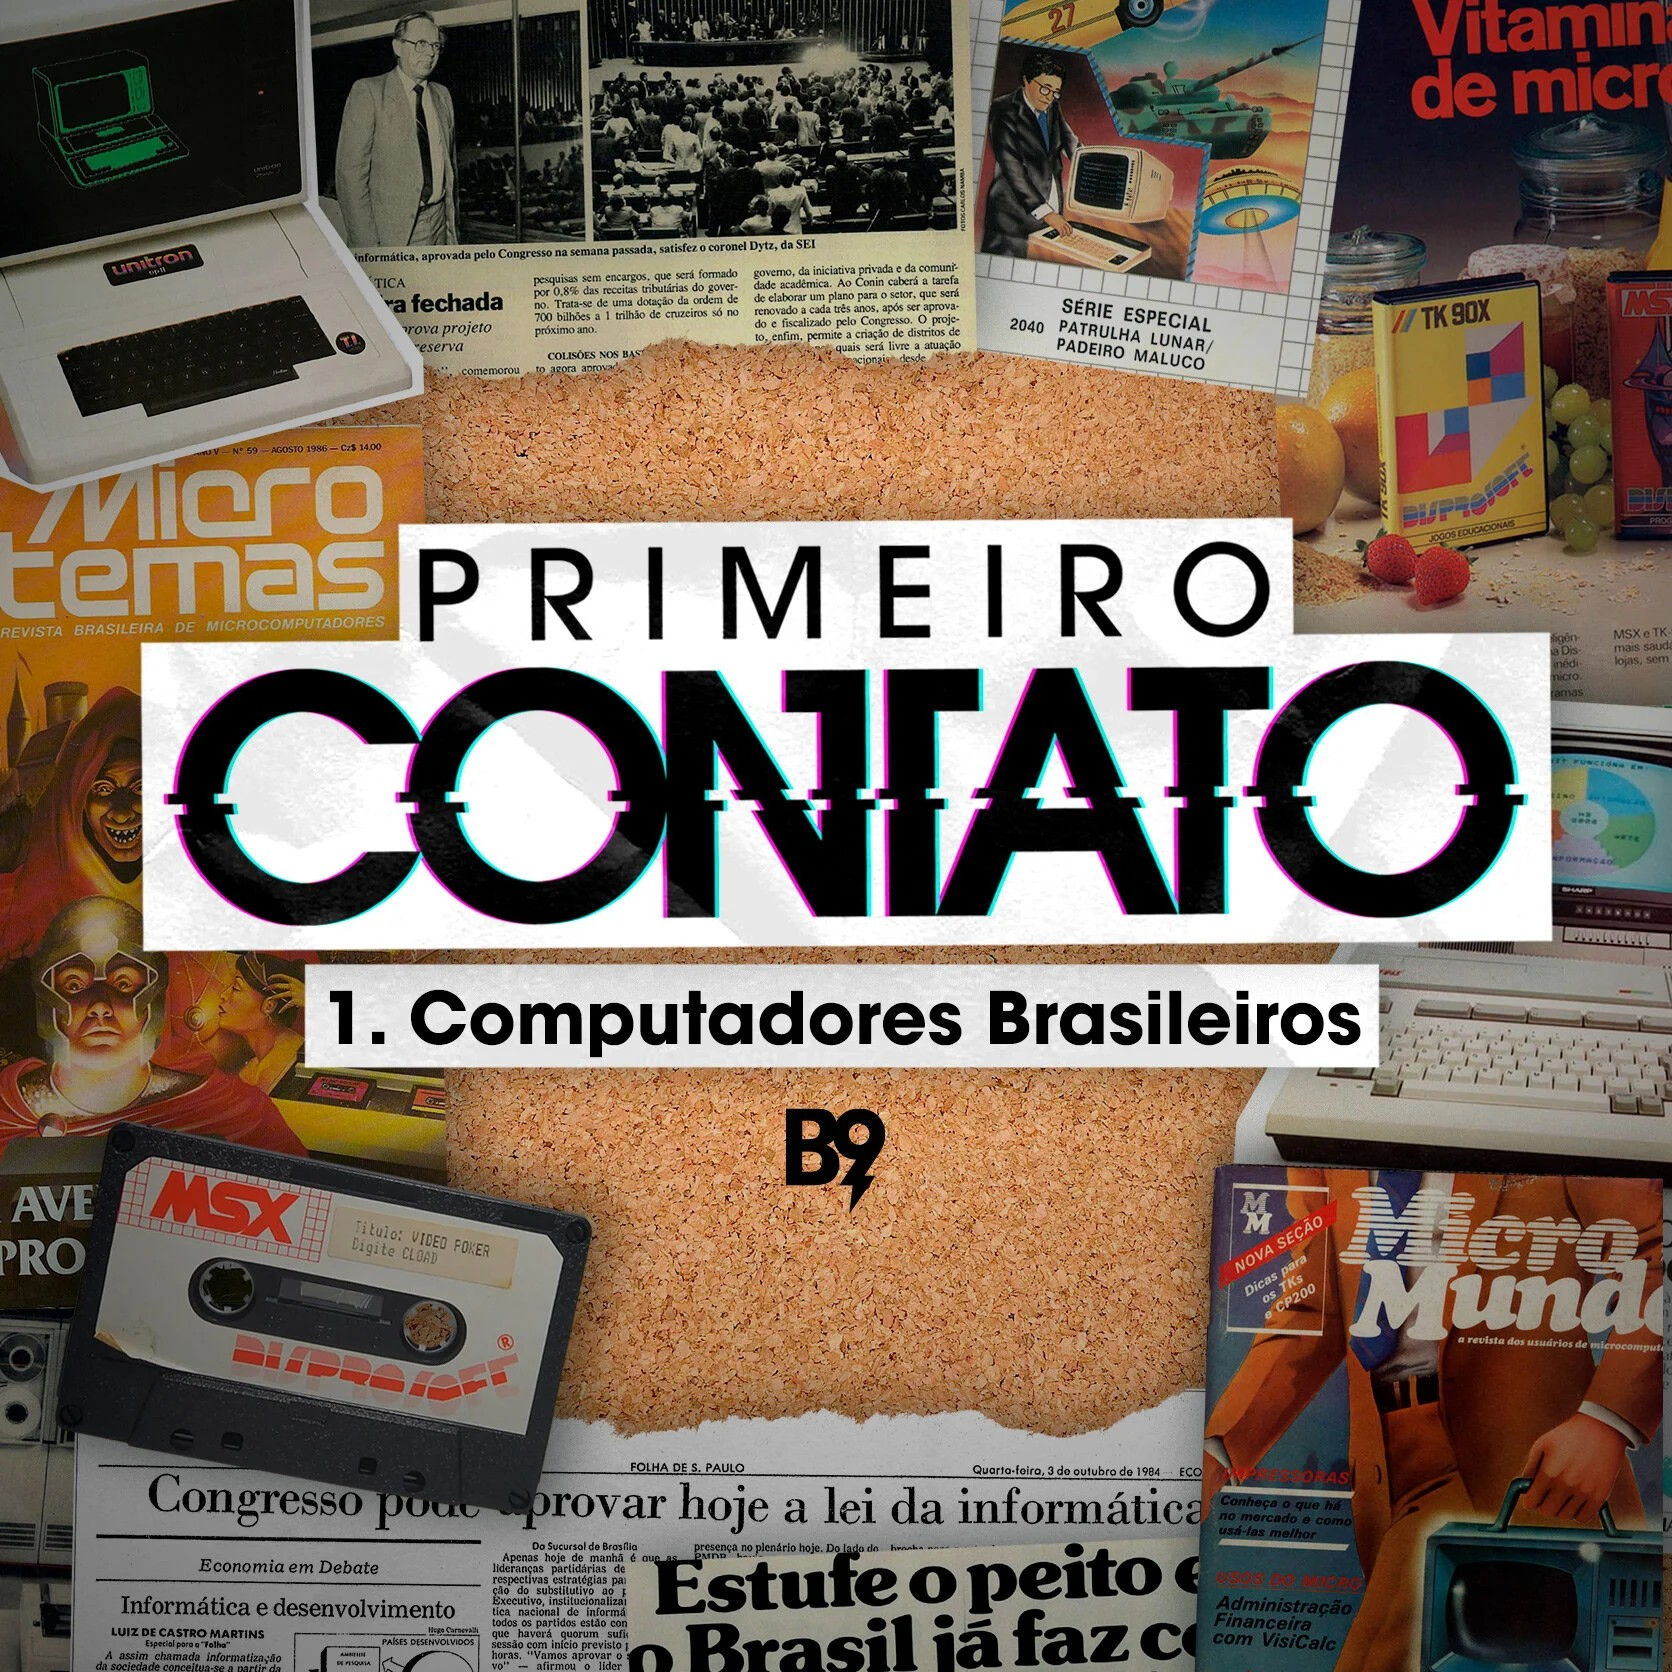 Braincast apresenta: Primeiro Contato - 1. Computadores Brasileiros